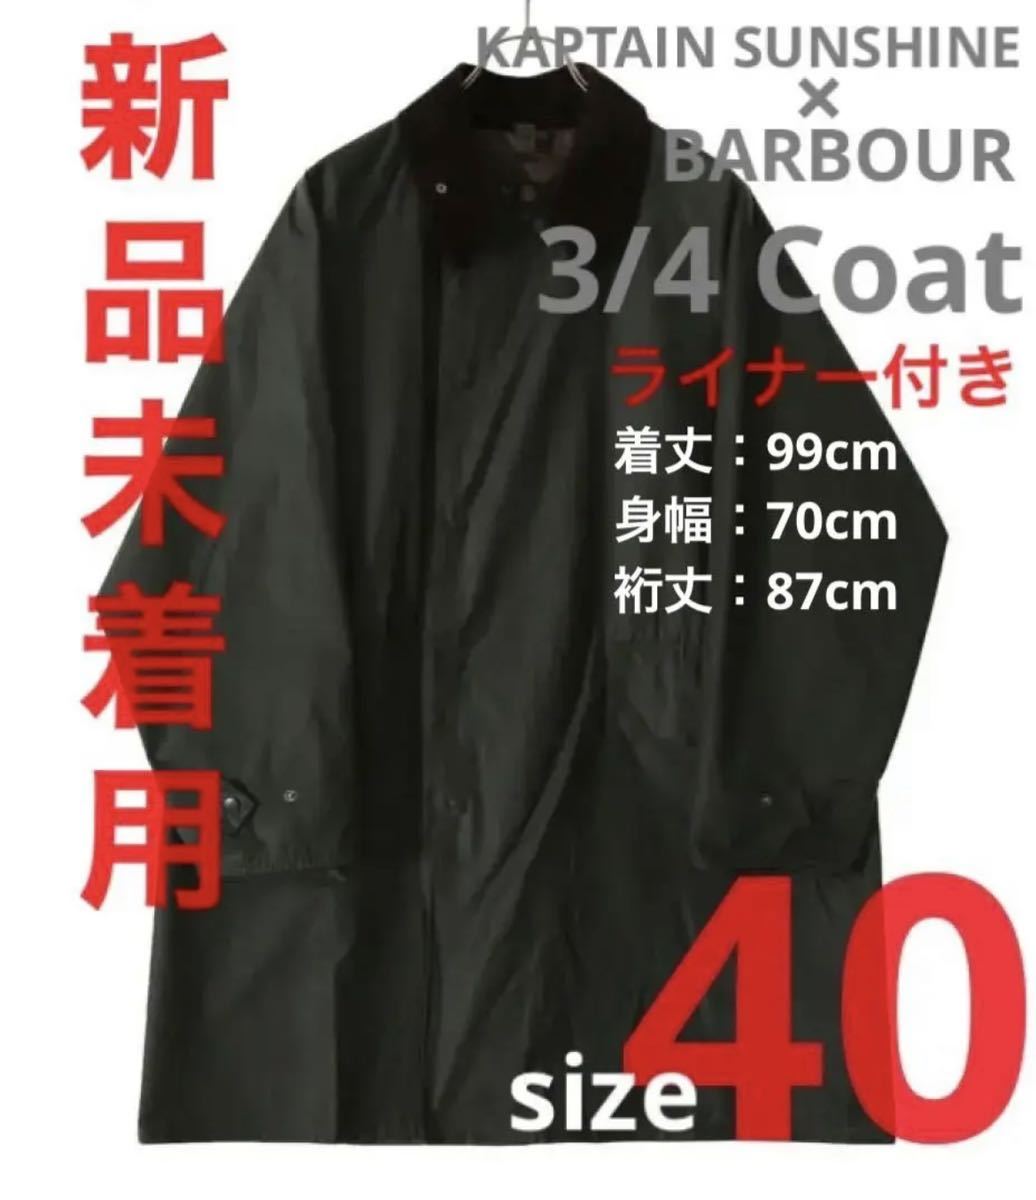 【新品未着用】KAPTAIN SUNSHINE Barbour 3/4 Coat サイズ40